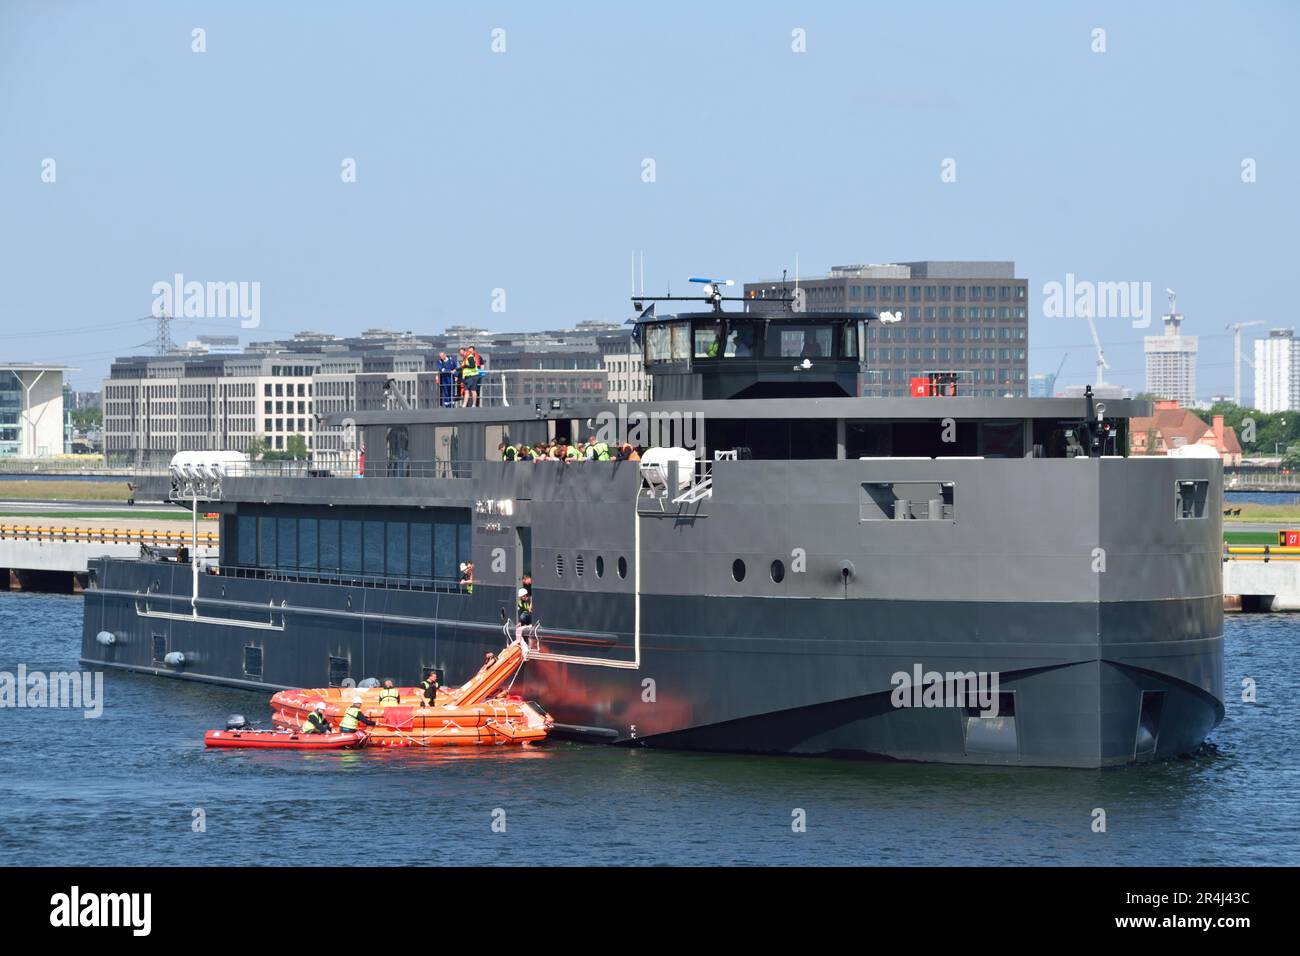 Das neue batteriebetriebene Unterhaltungsschiff OceanDiva London, das in den Royal Docks in London Rettungsflößversuche durchführt Stockfoto